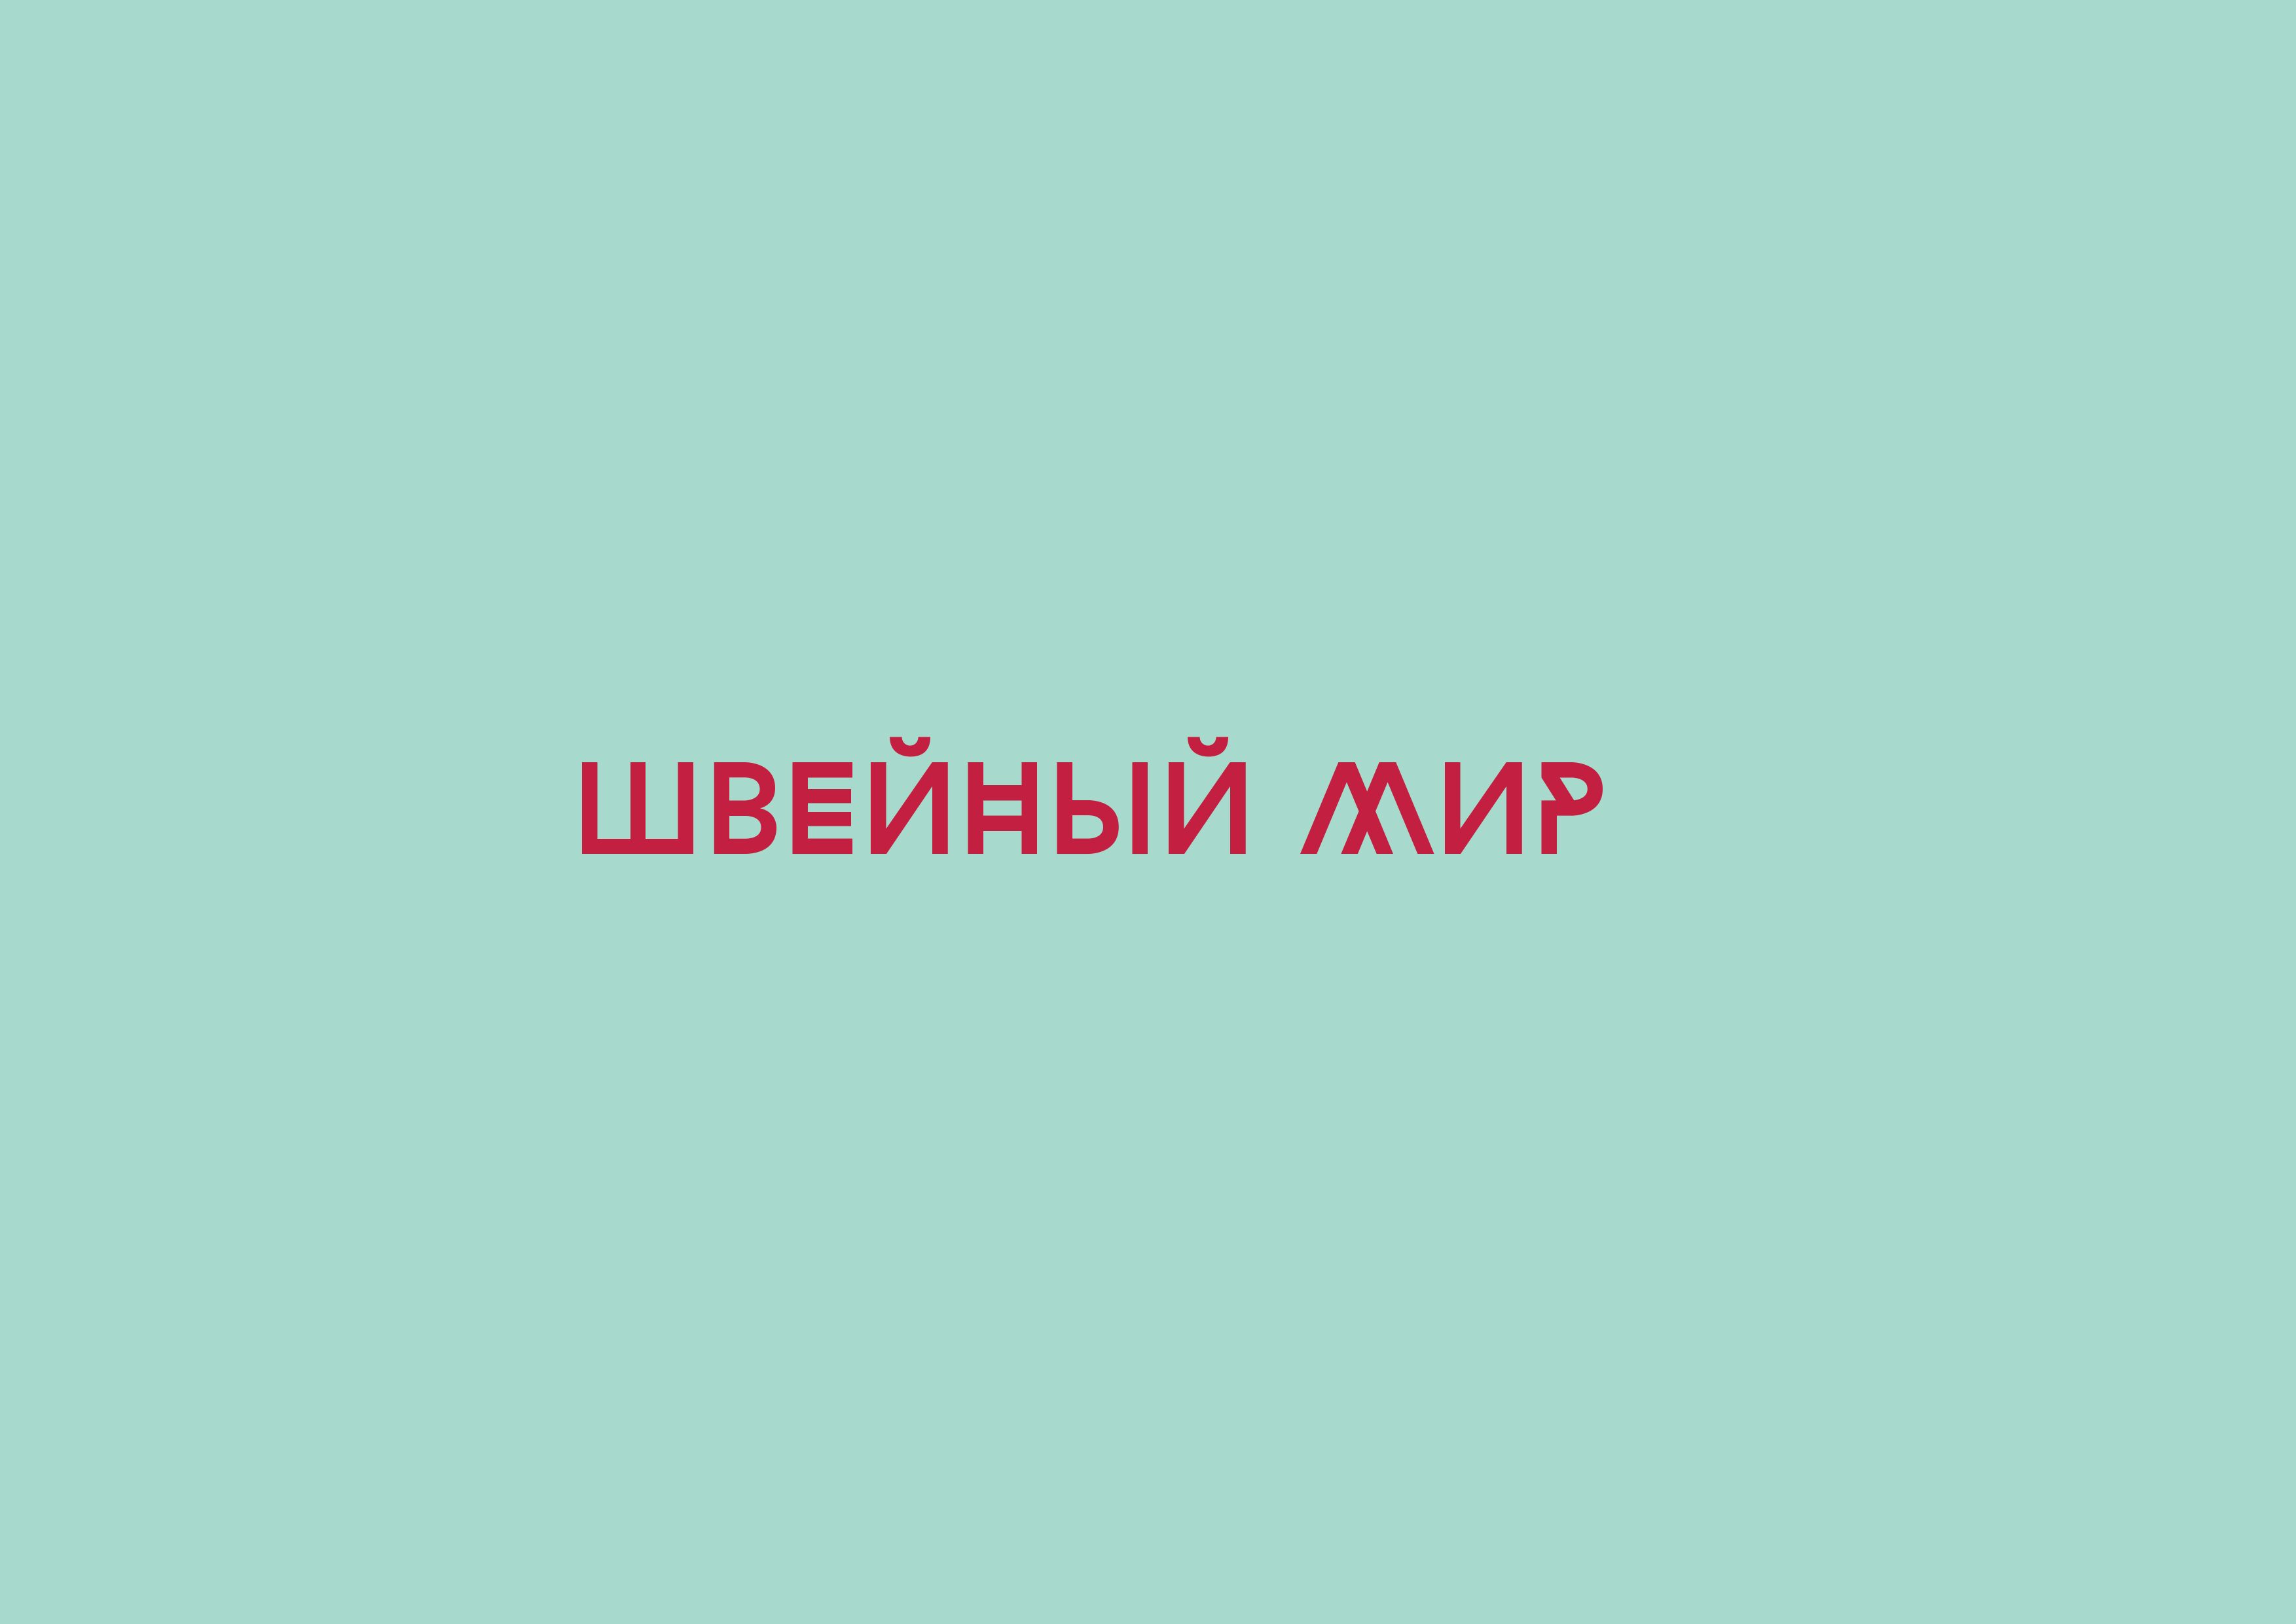 Логотип для ООО Швейный мир - дизайнер Jedi_artist